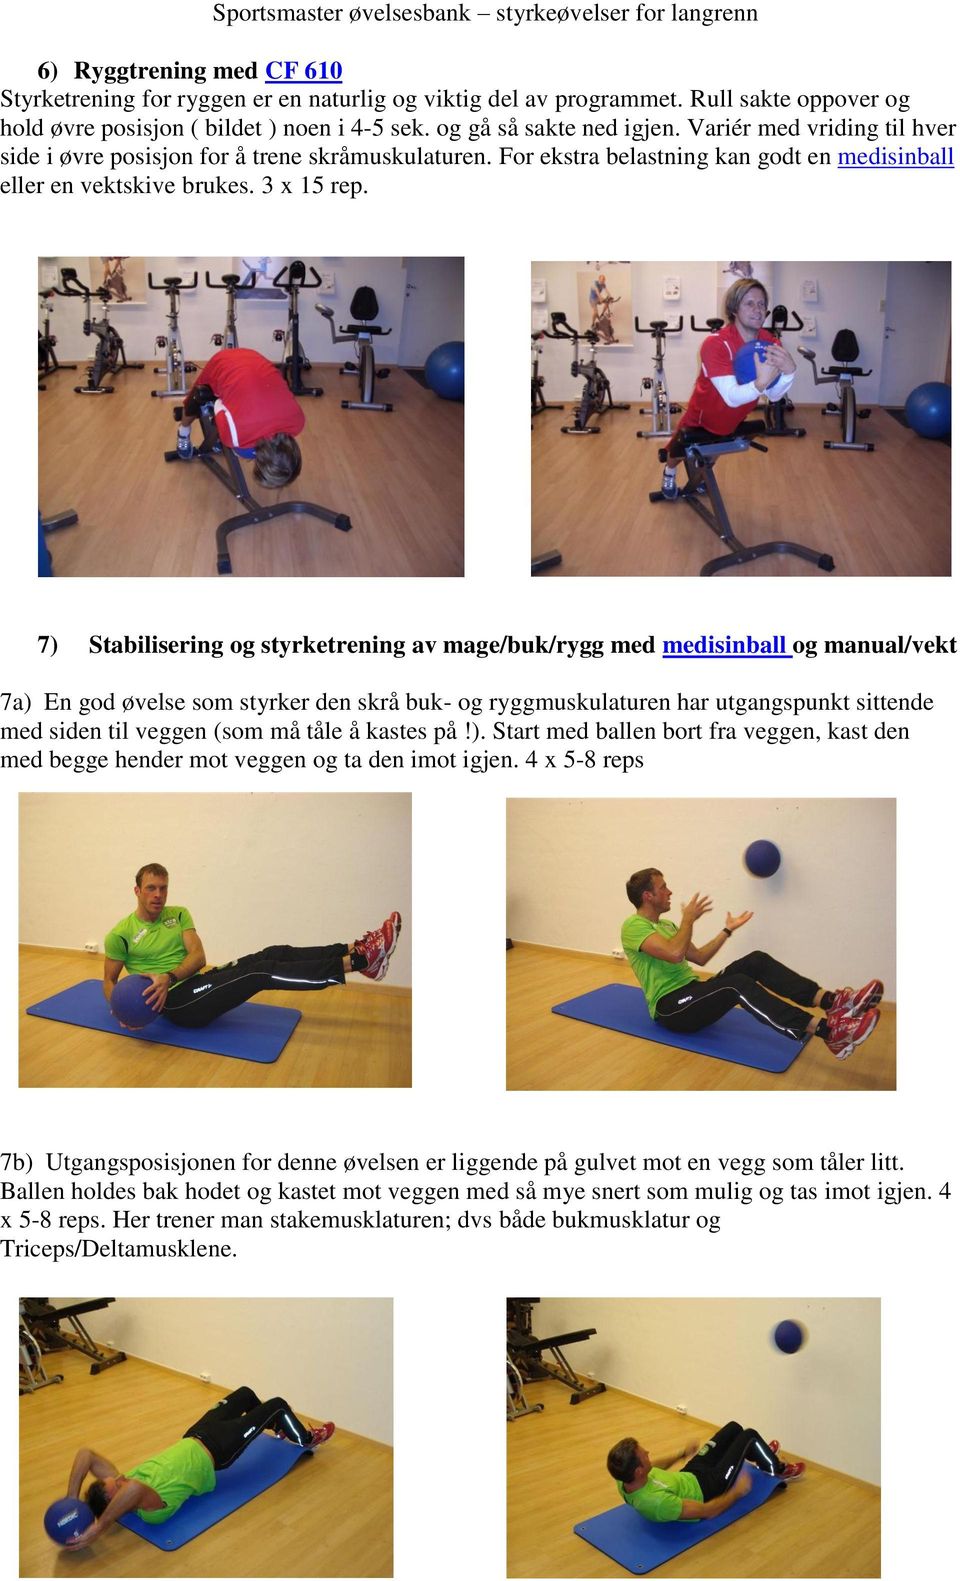 7) Stabilisering og styrketrening av mage/buk/rygg med medisinball og manual/vekt 7a) En god øvelse som styrker den skrå buk- og ryggmuskulaturen har utgangspunkt sittende med siden til veggen (som